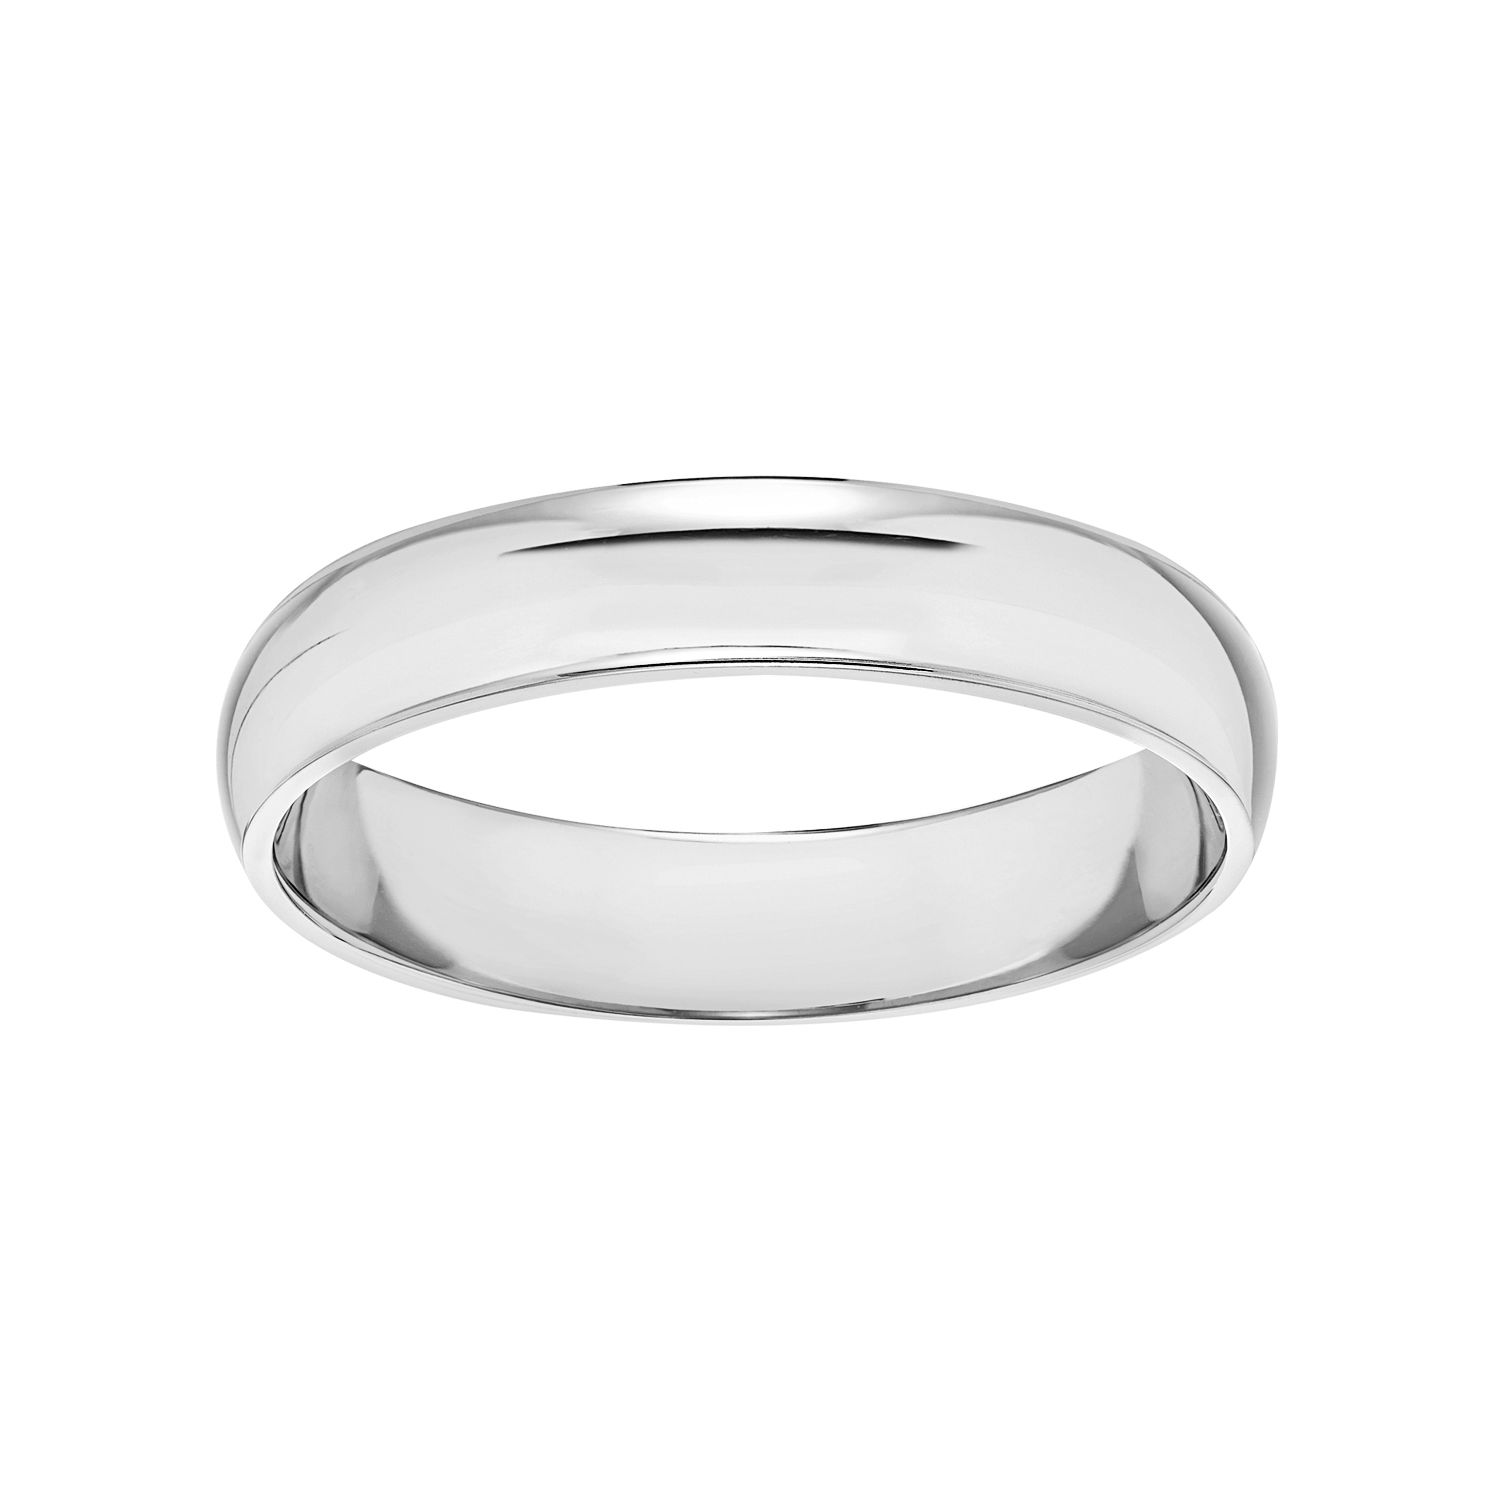 Mens wedding rings metal options